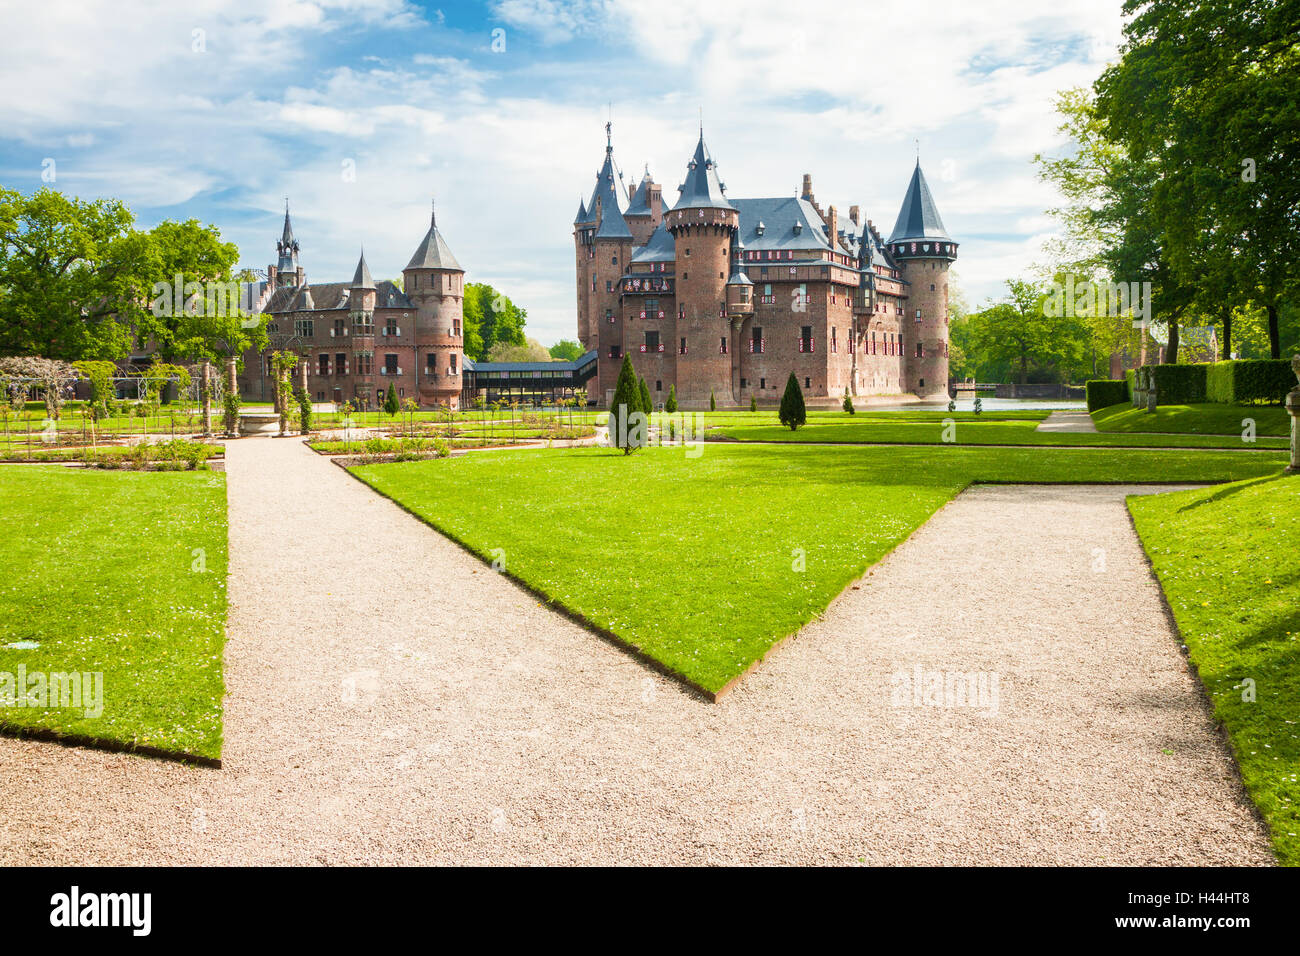 HAARZUILENS, NETHERLANDS - May 18, 2012: Castle de Haar with gardens in the foreground Stock Photo